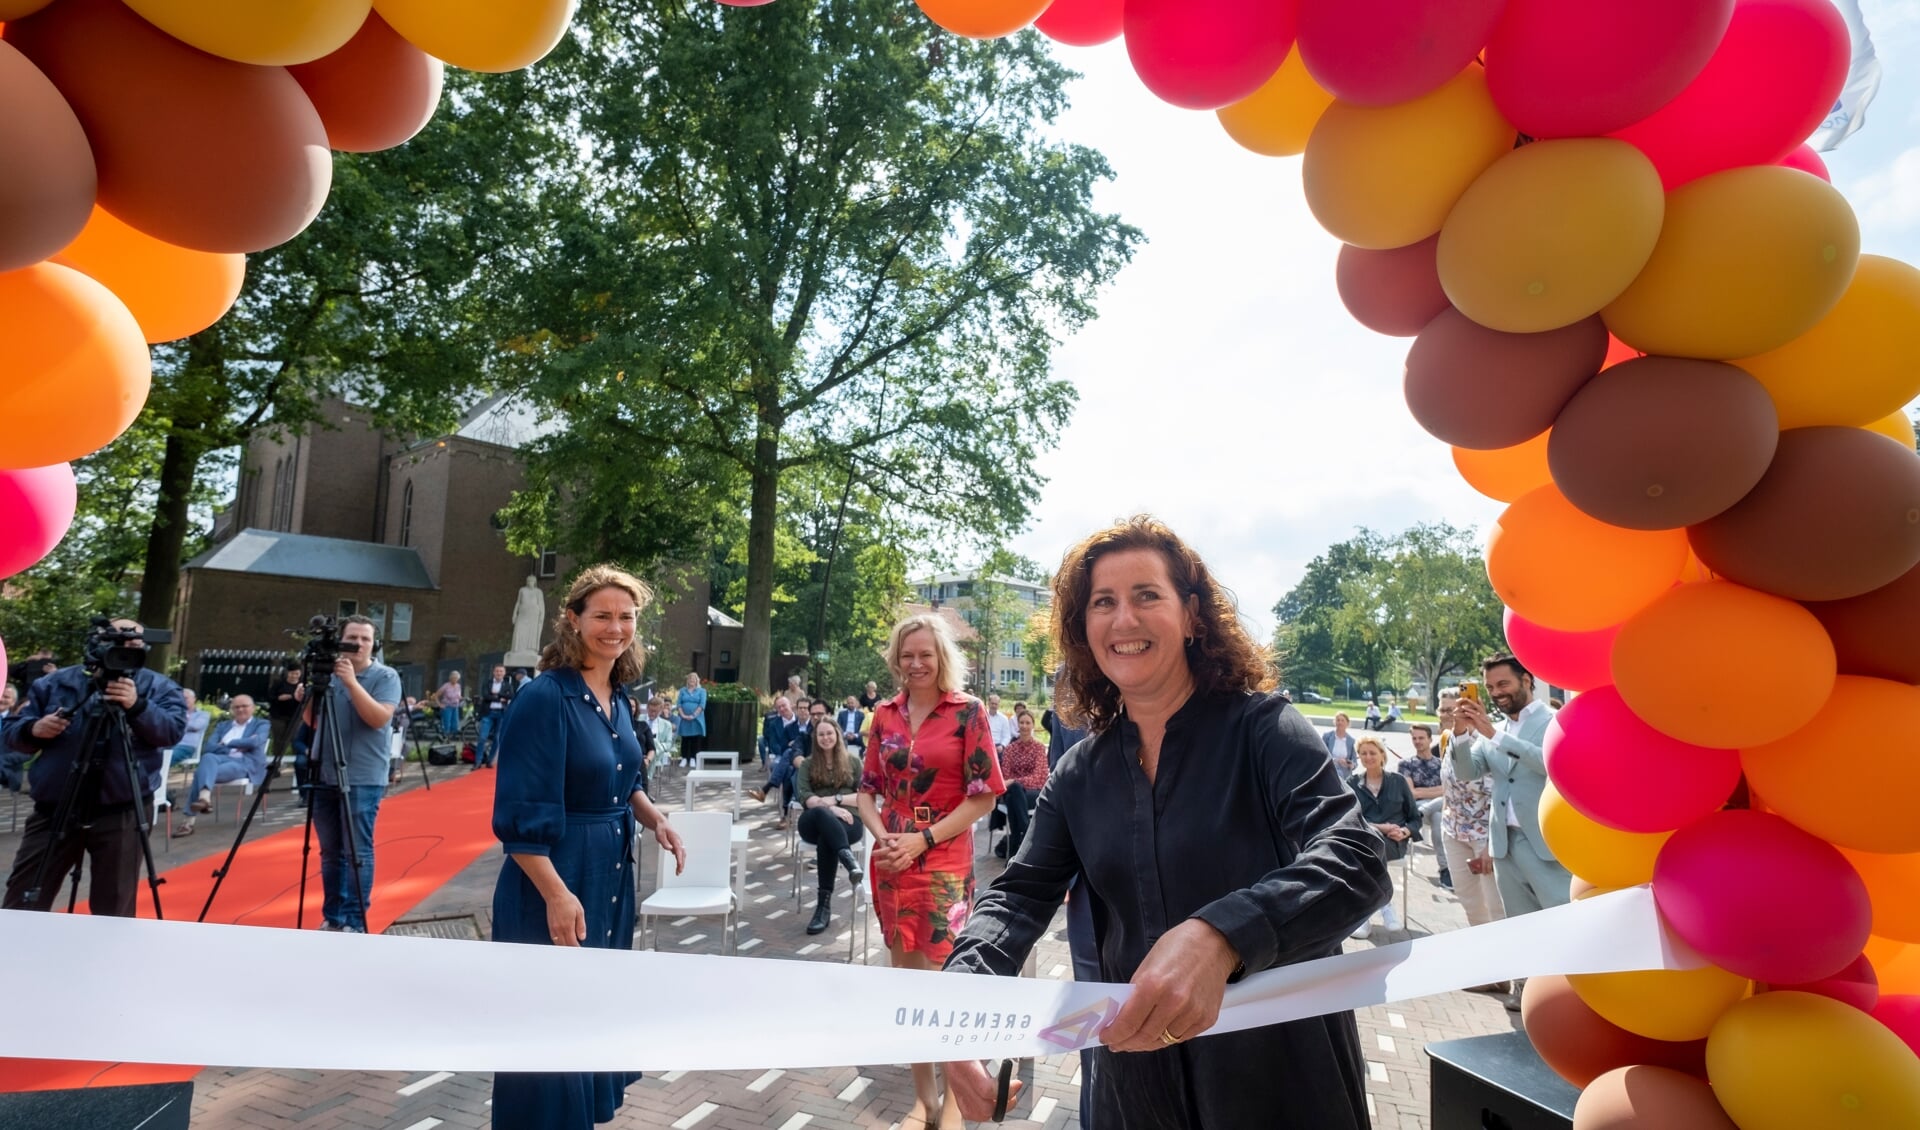 De minister opent het Grensland College officieel. Foto: Ron Rensink Fotografie